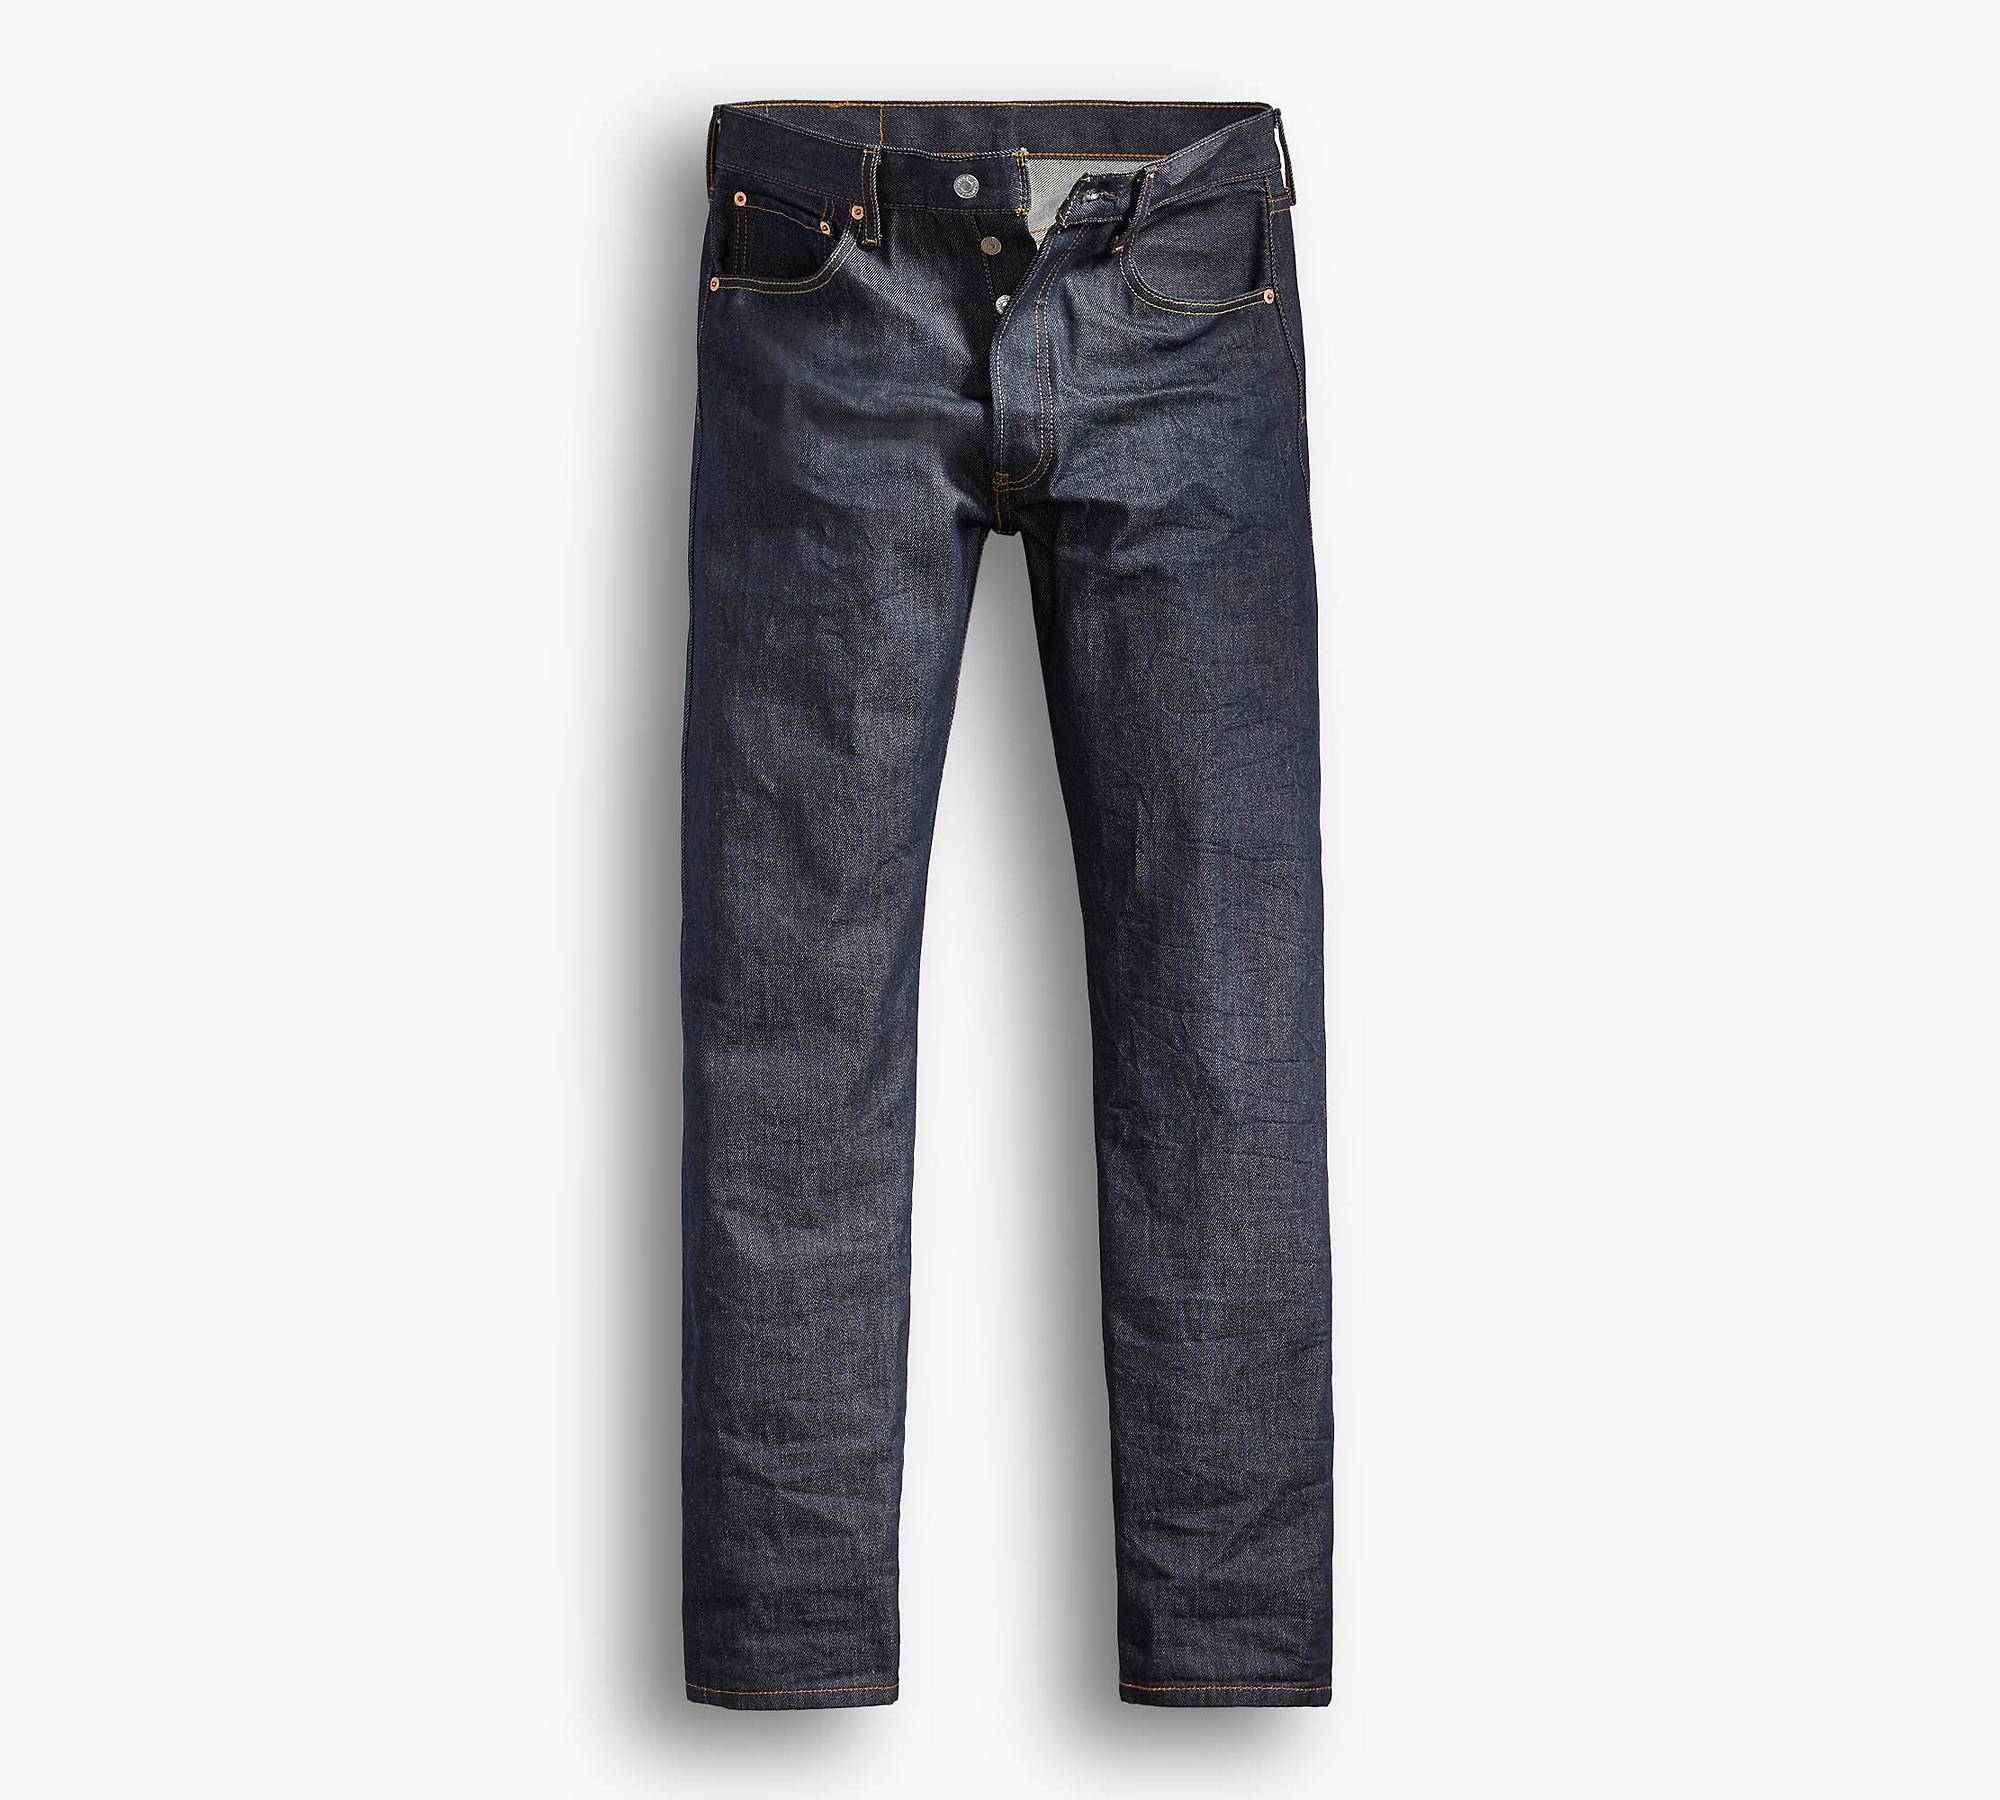 ® Original Shrink to fit™ Men's Jeans   Dark Wash   Levi's® US